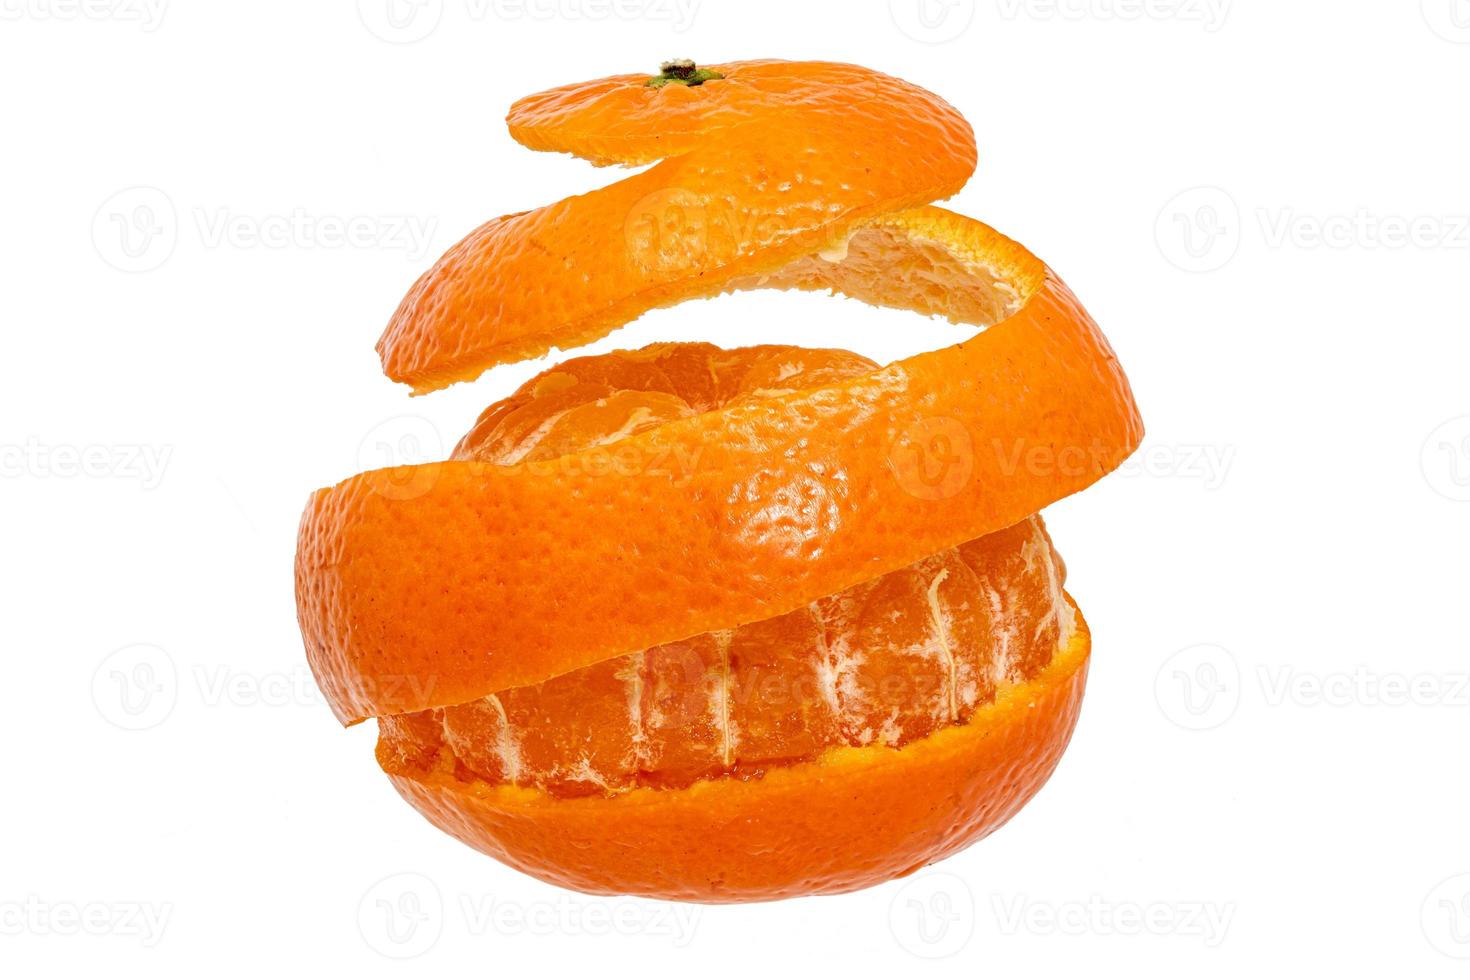 mandarijn rondom afgepeld in een reep foto